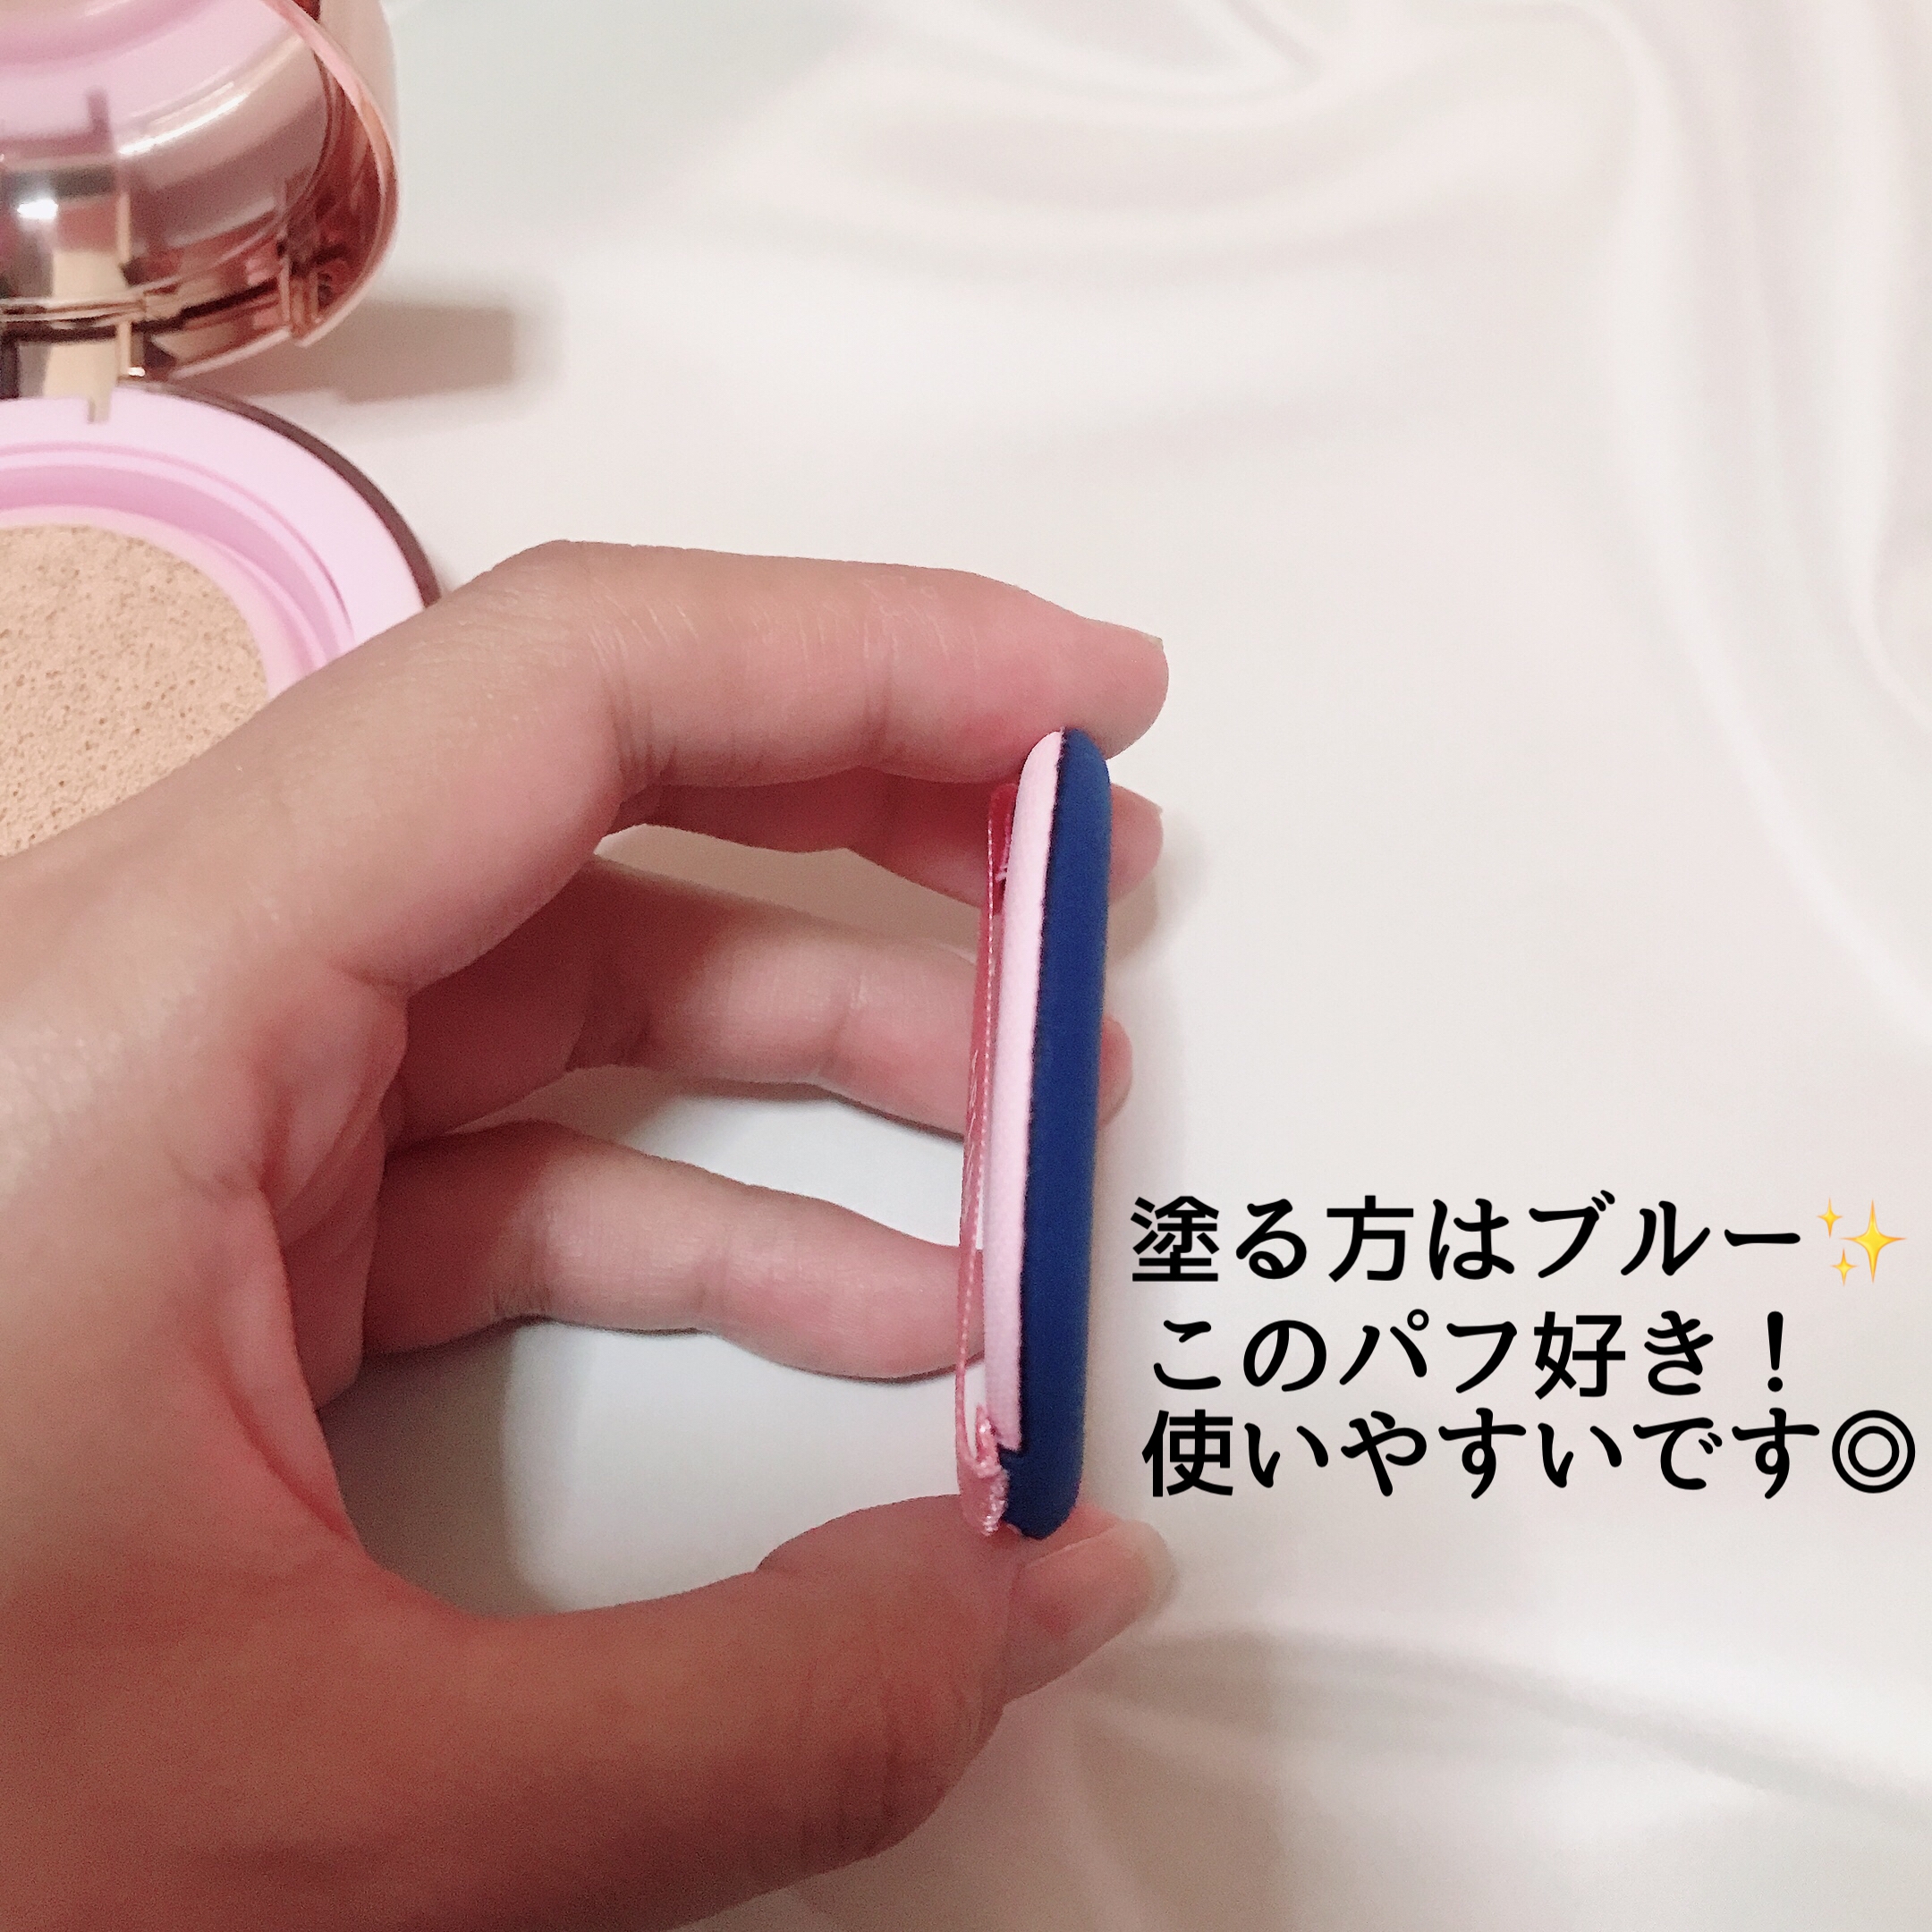 APLIN(アプリン) ピンクティーツリーカバークッションを使ったMarukoさんのクチコミ画像4